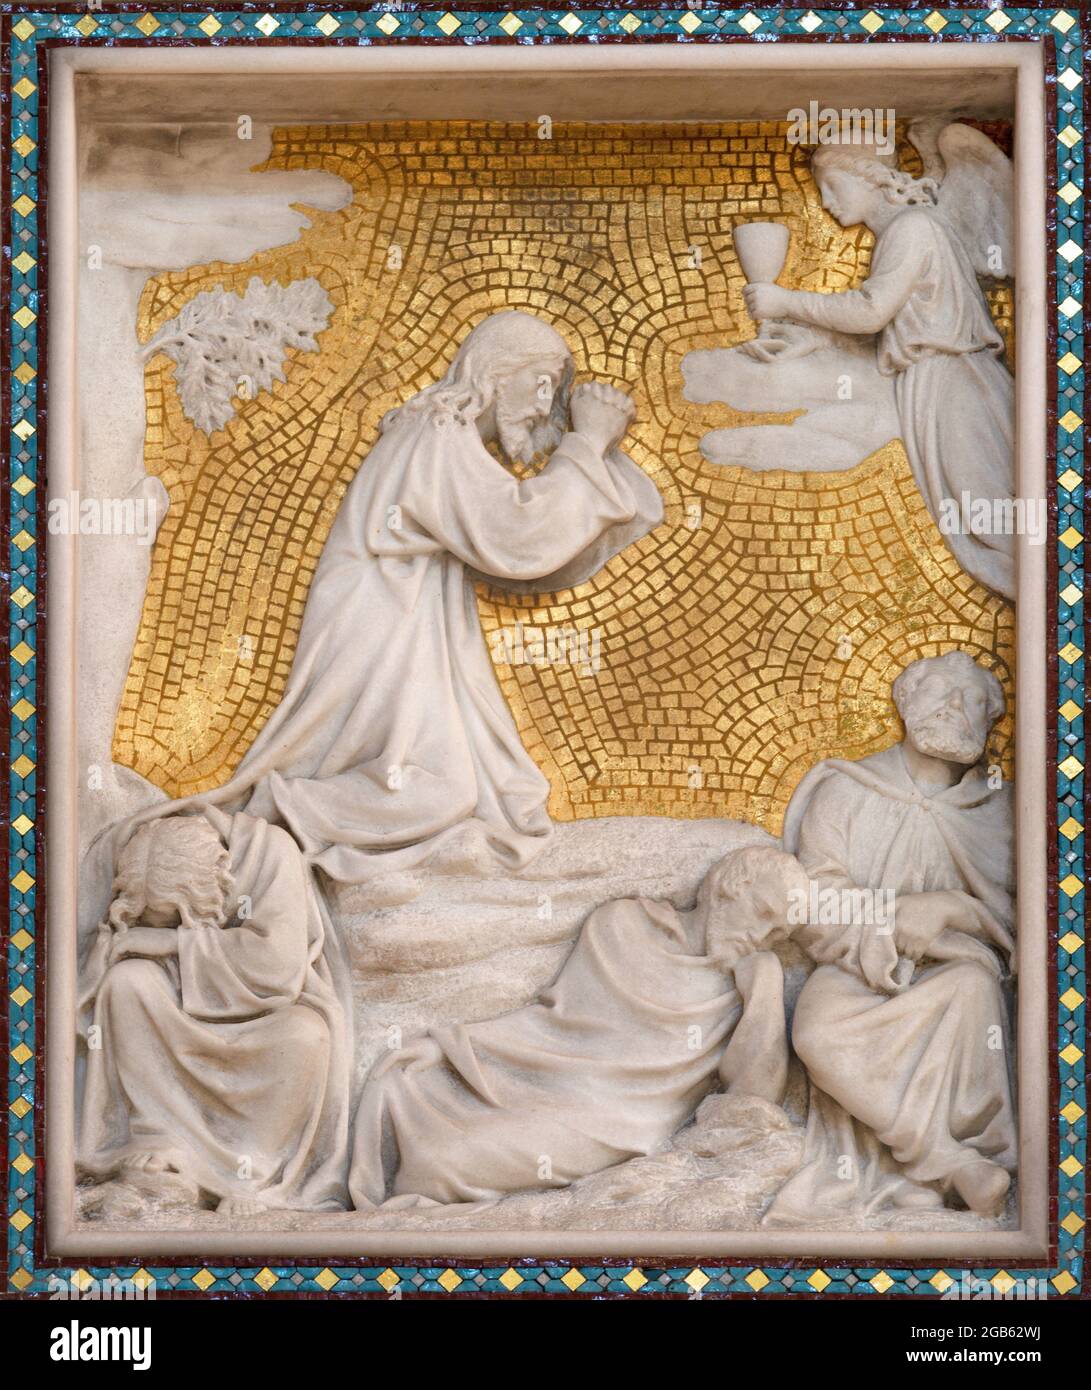 VIENNE, AUSTIRA - JUNI 24, 2021: Le soulagement de la prière de Jésus dans le jardin de Gethsemane sur le sidealtar de la cathédrale de Votivkirche à partir de 19. Cent. Banque D'Images